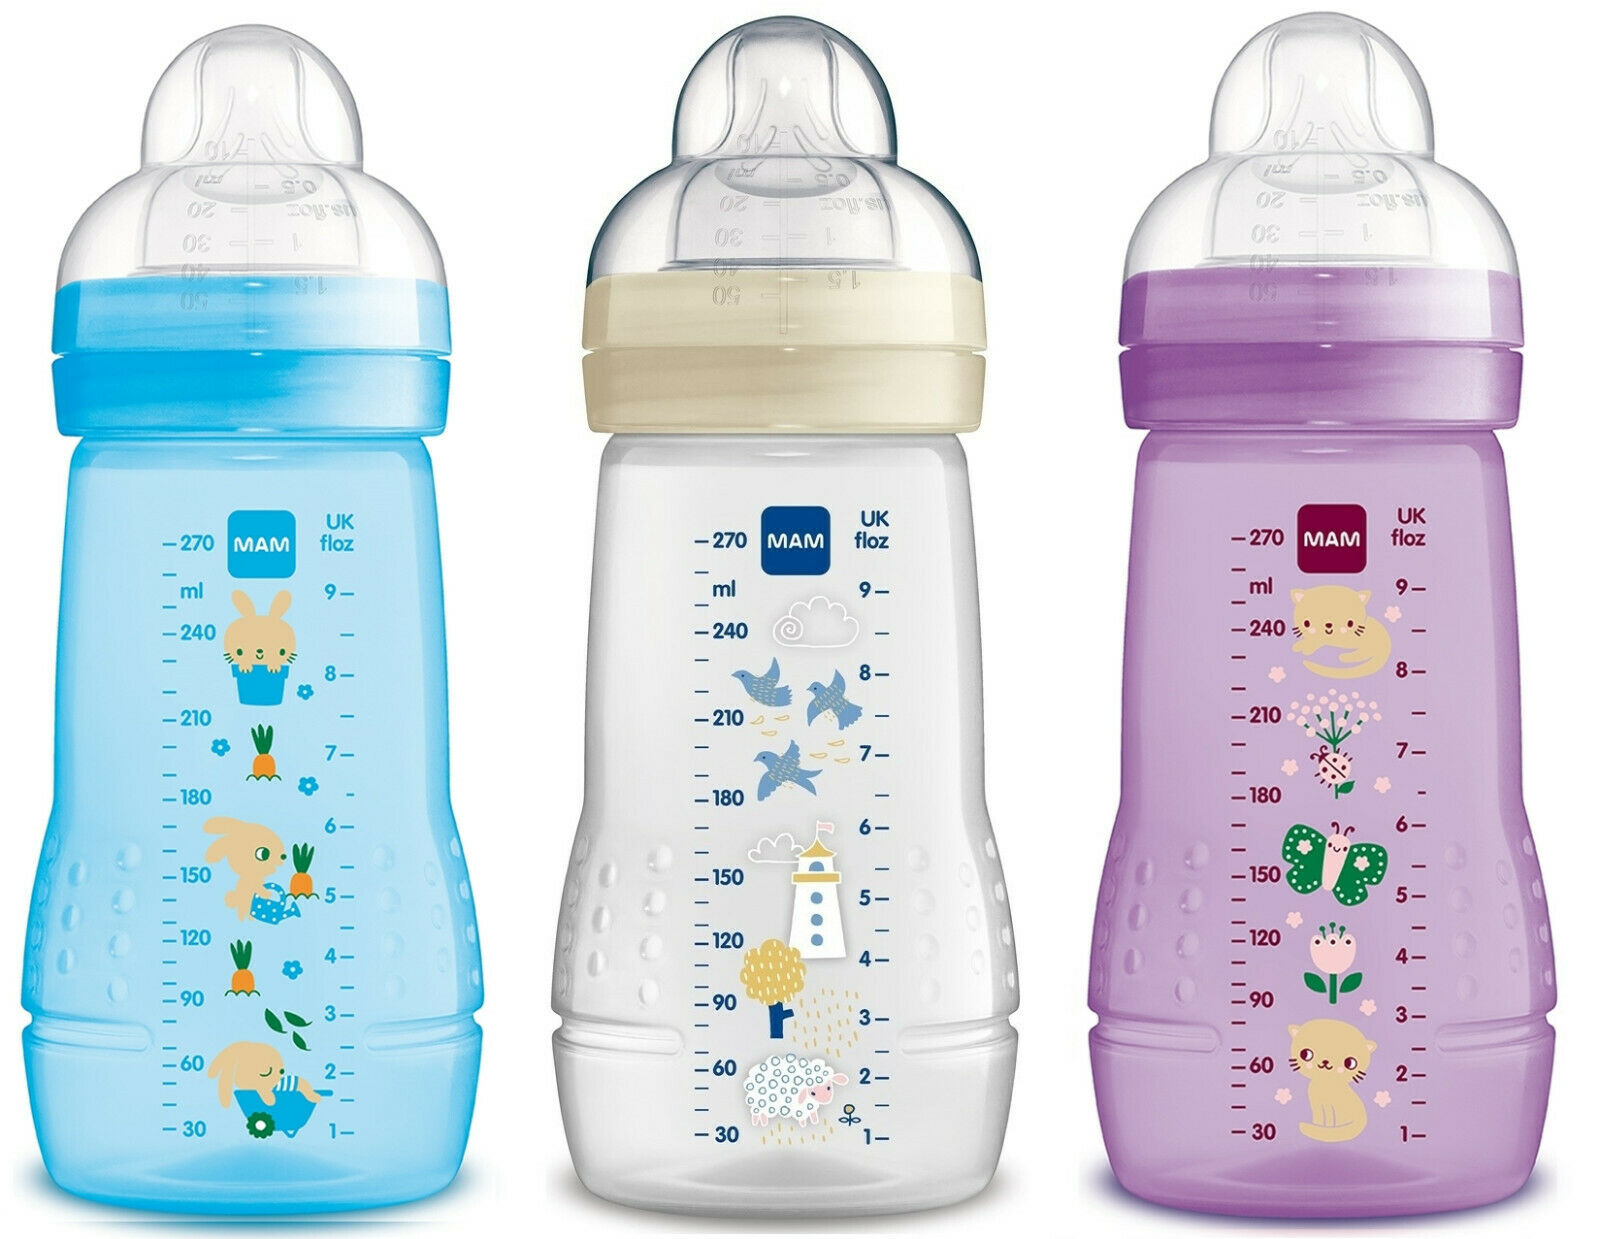 Mam Easy Active Baby Bottle Doppelpackung 270 Ml Mit Seidensauger *neu*